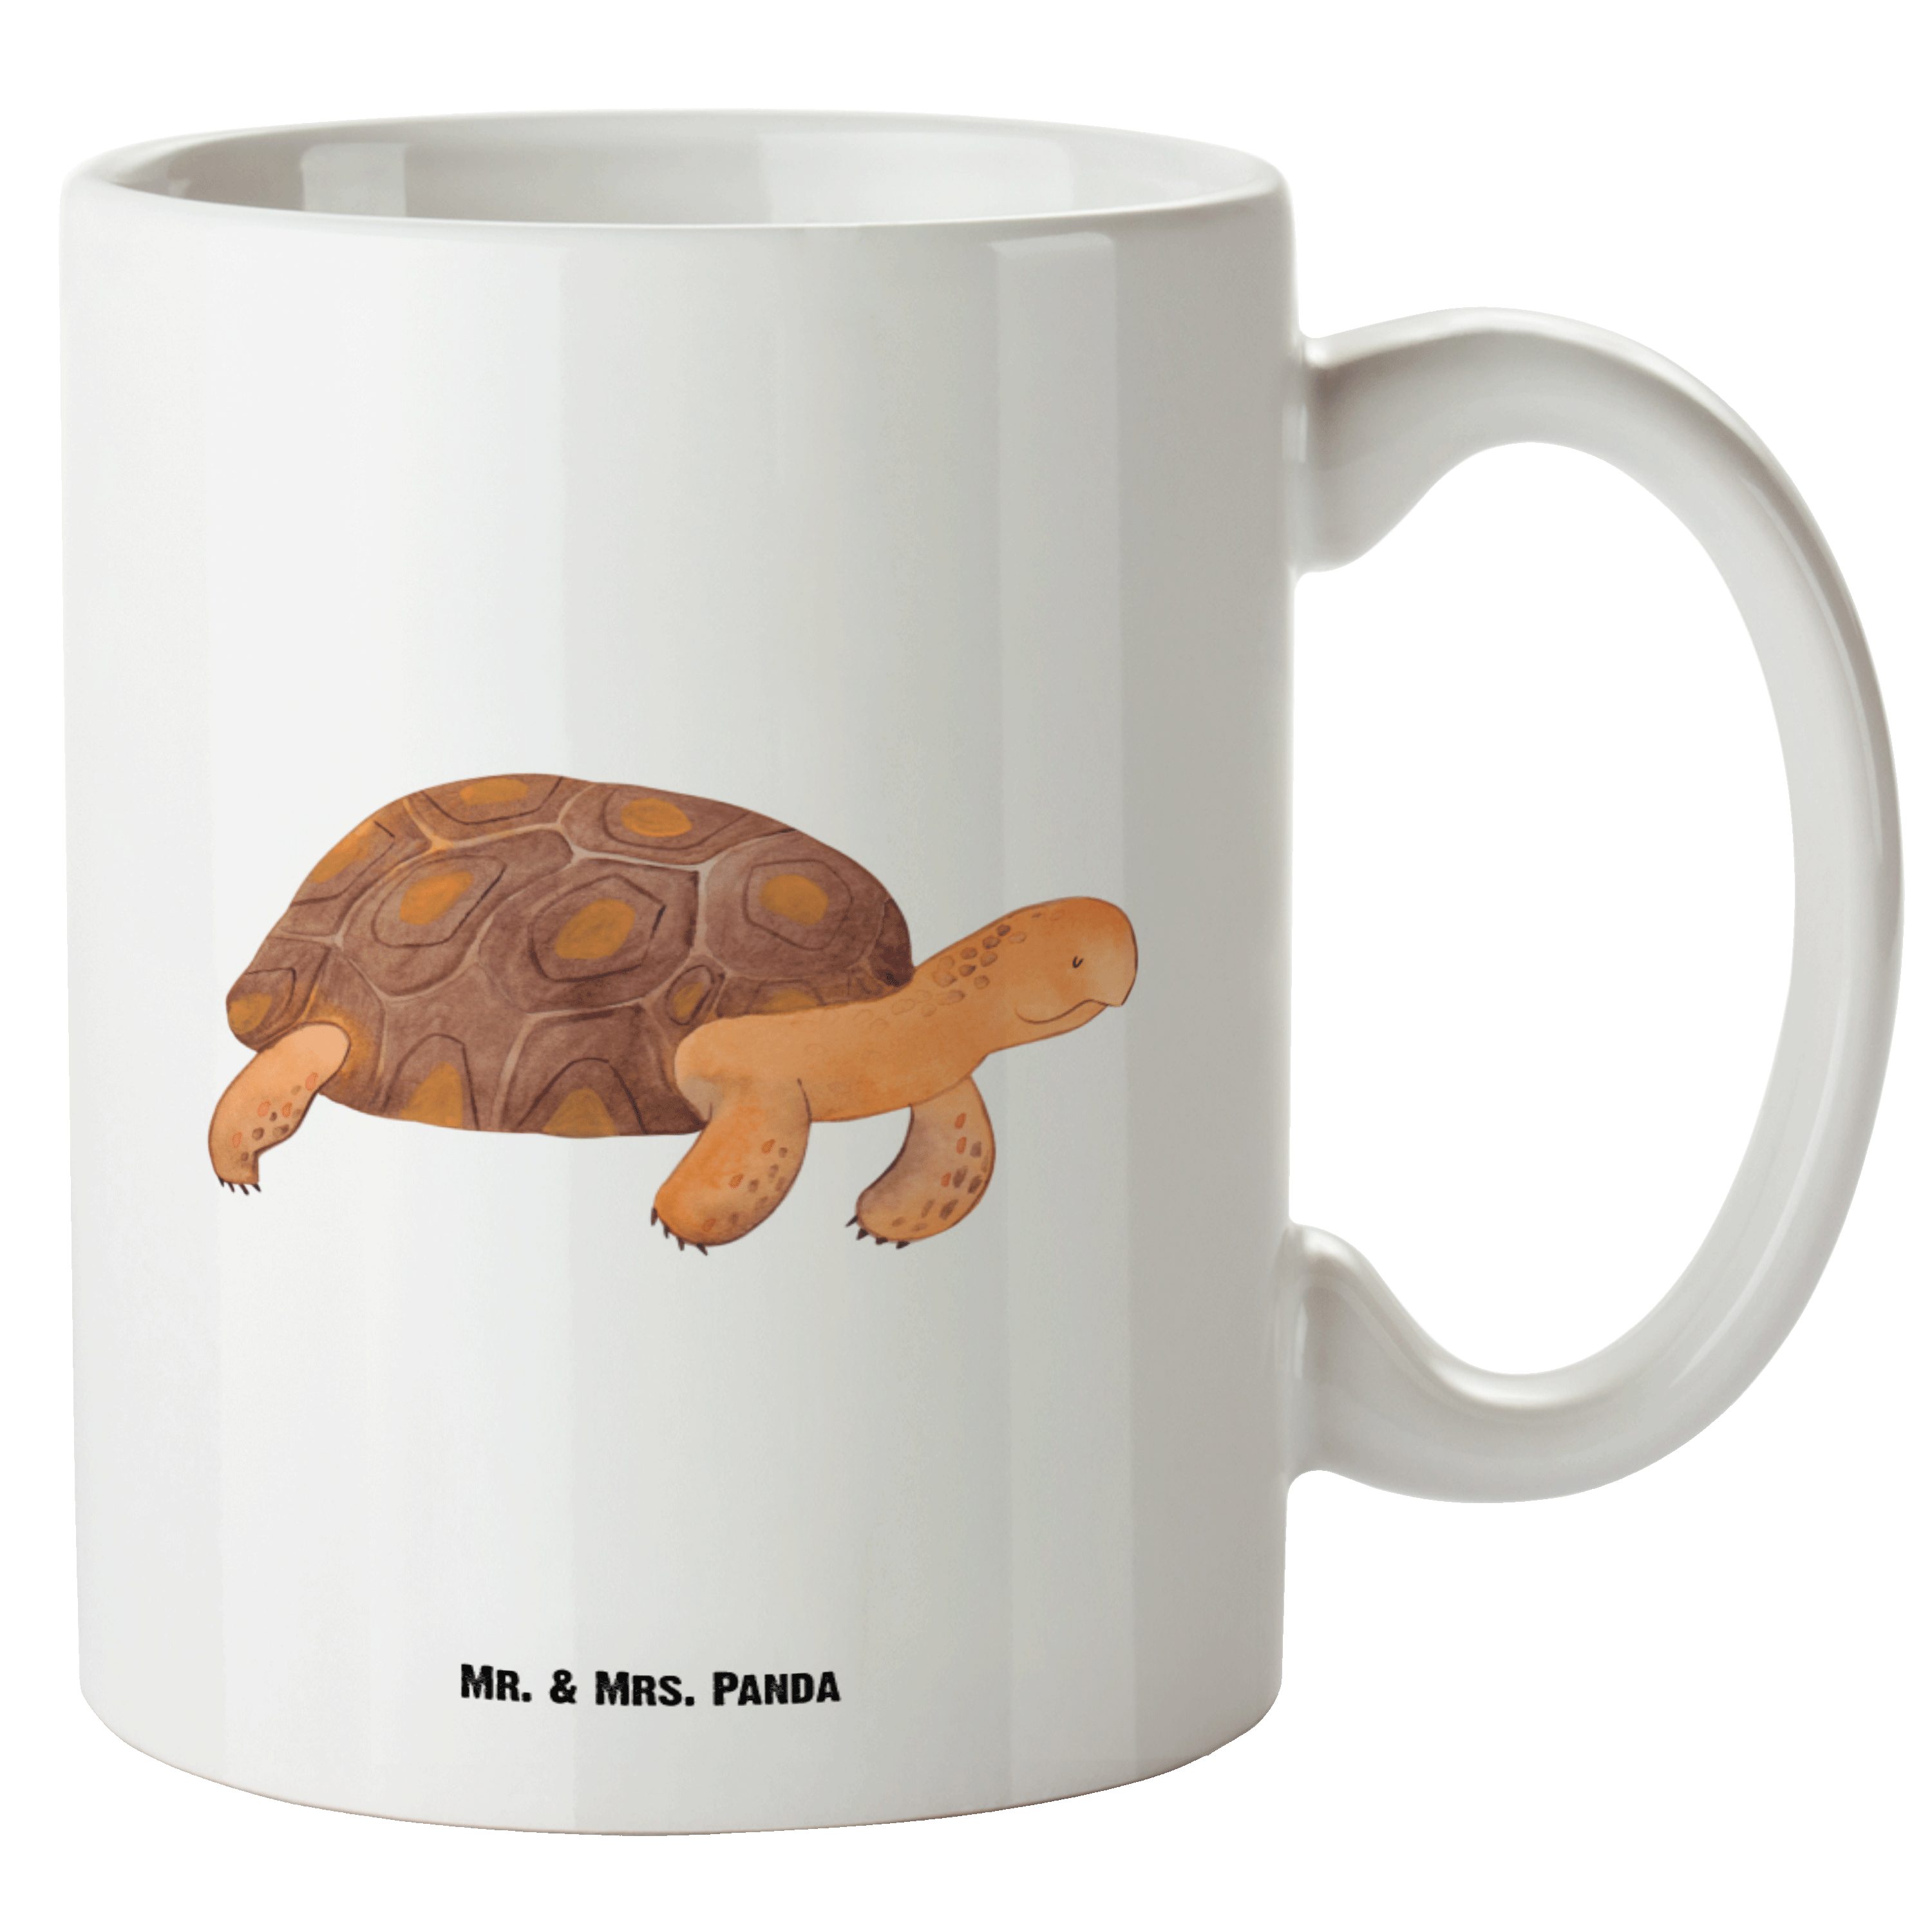 [Qualität zuerst] Mr. & Mrs. Schildkröte - Grosse Tasse Keramik Geschenk, XL marschiert Lieblin, Kaffeetasse, Weiß Tasse Panda 